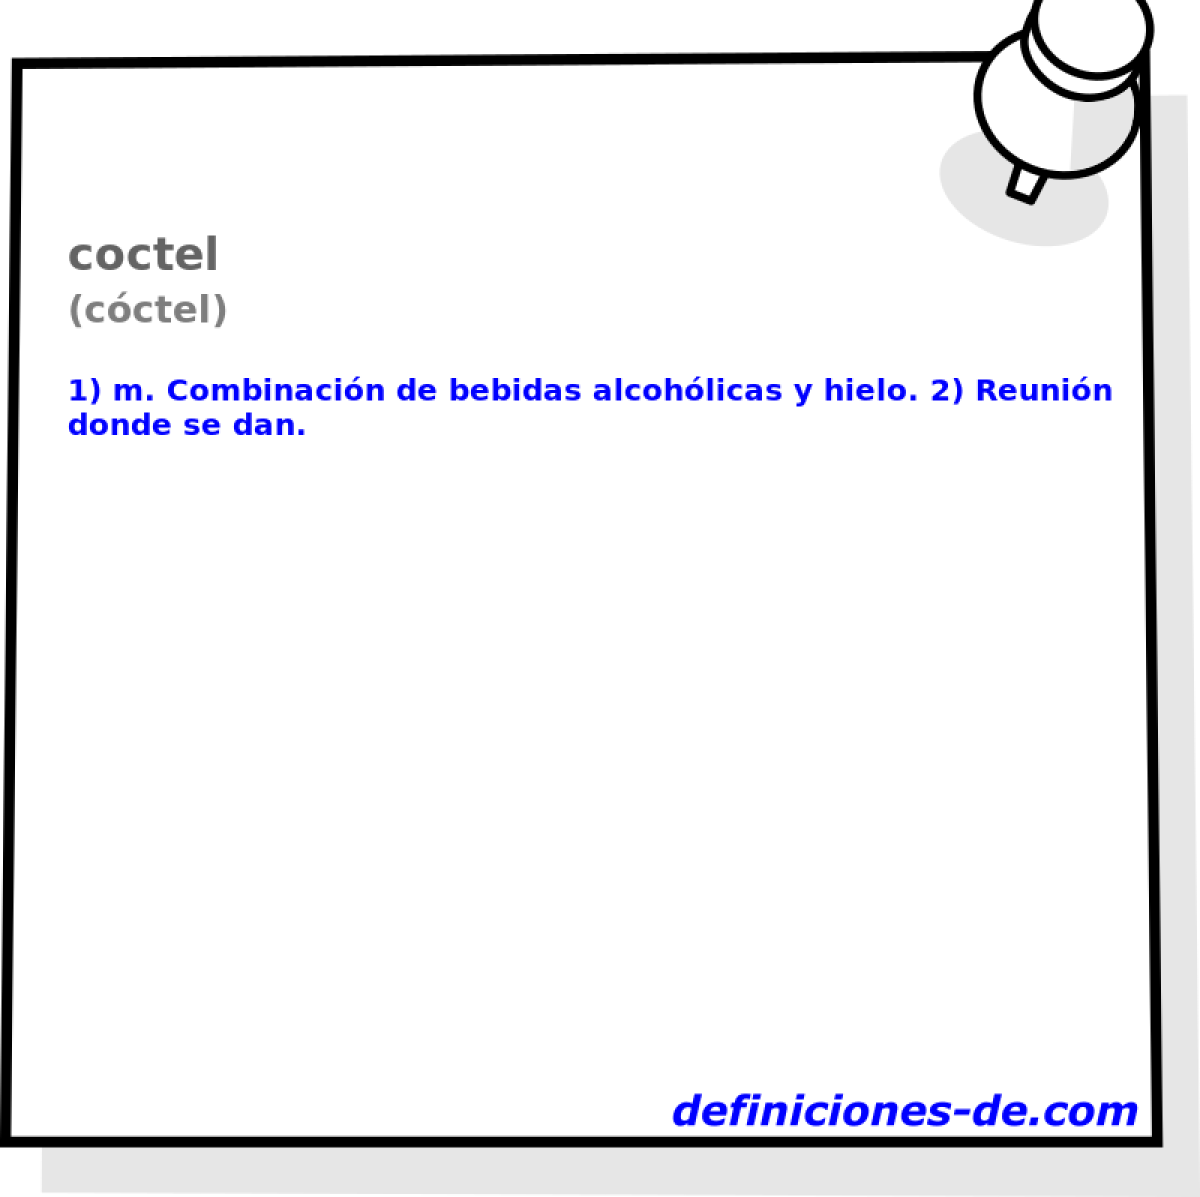 coctel (cctel)